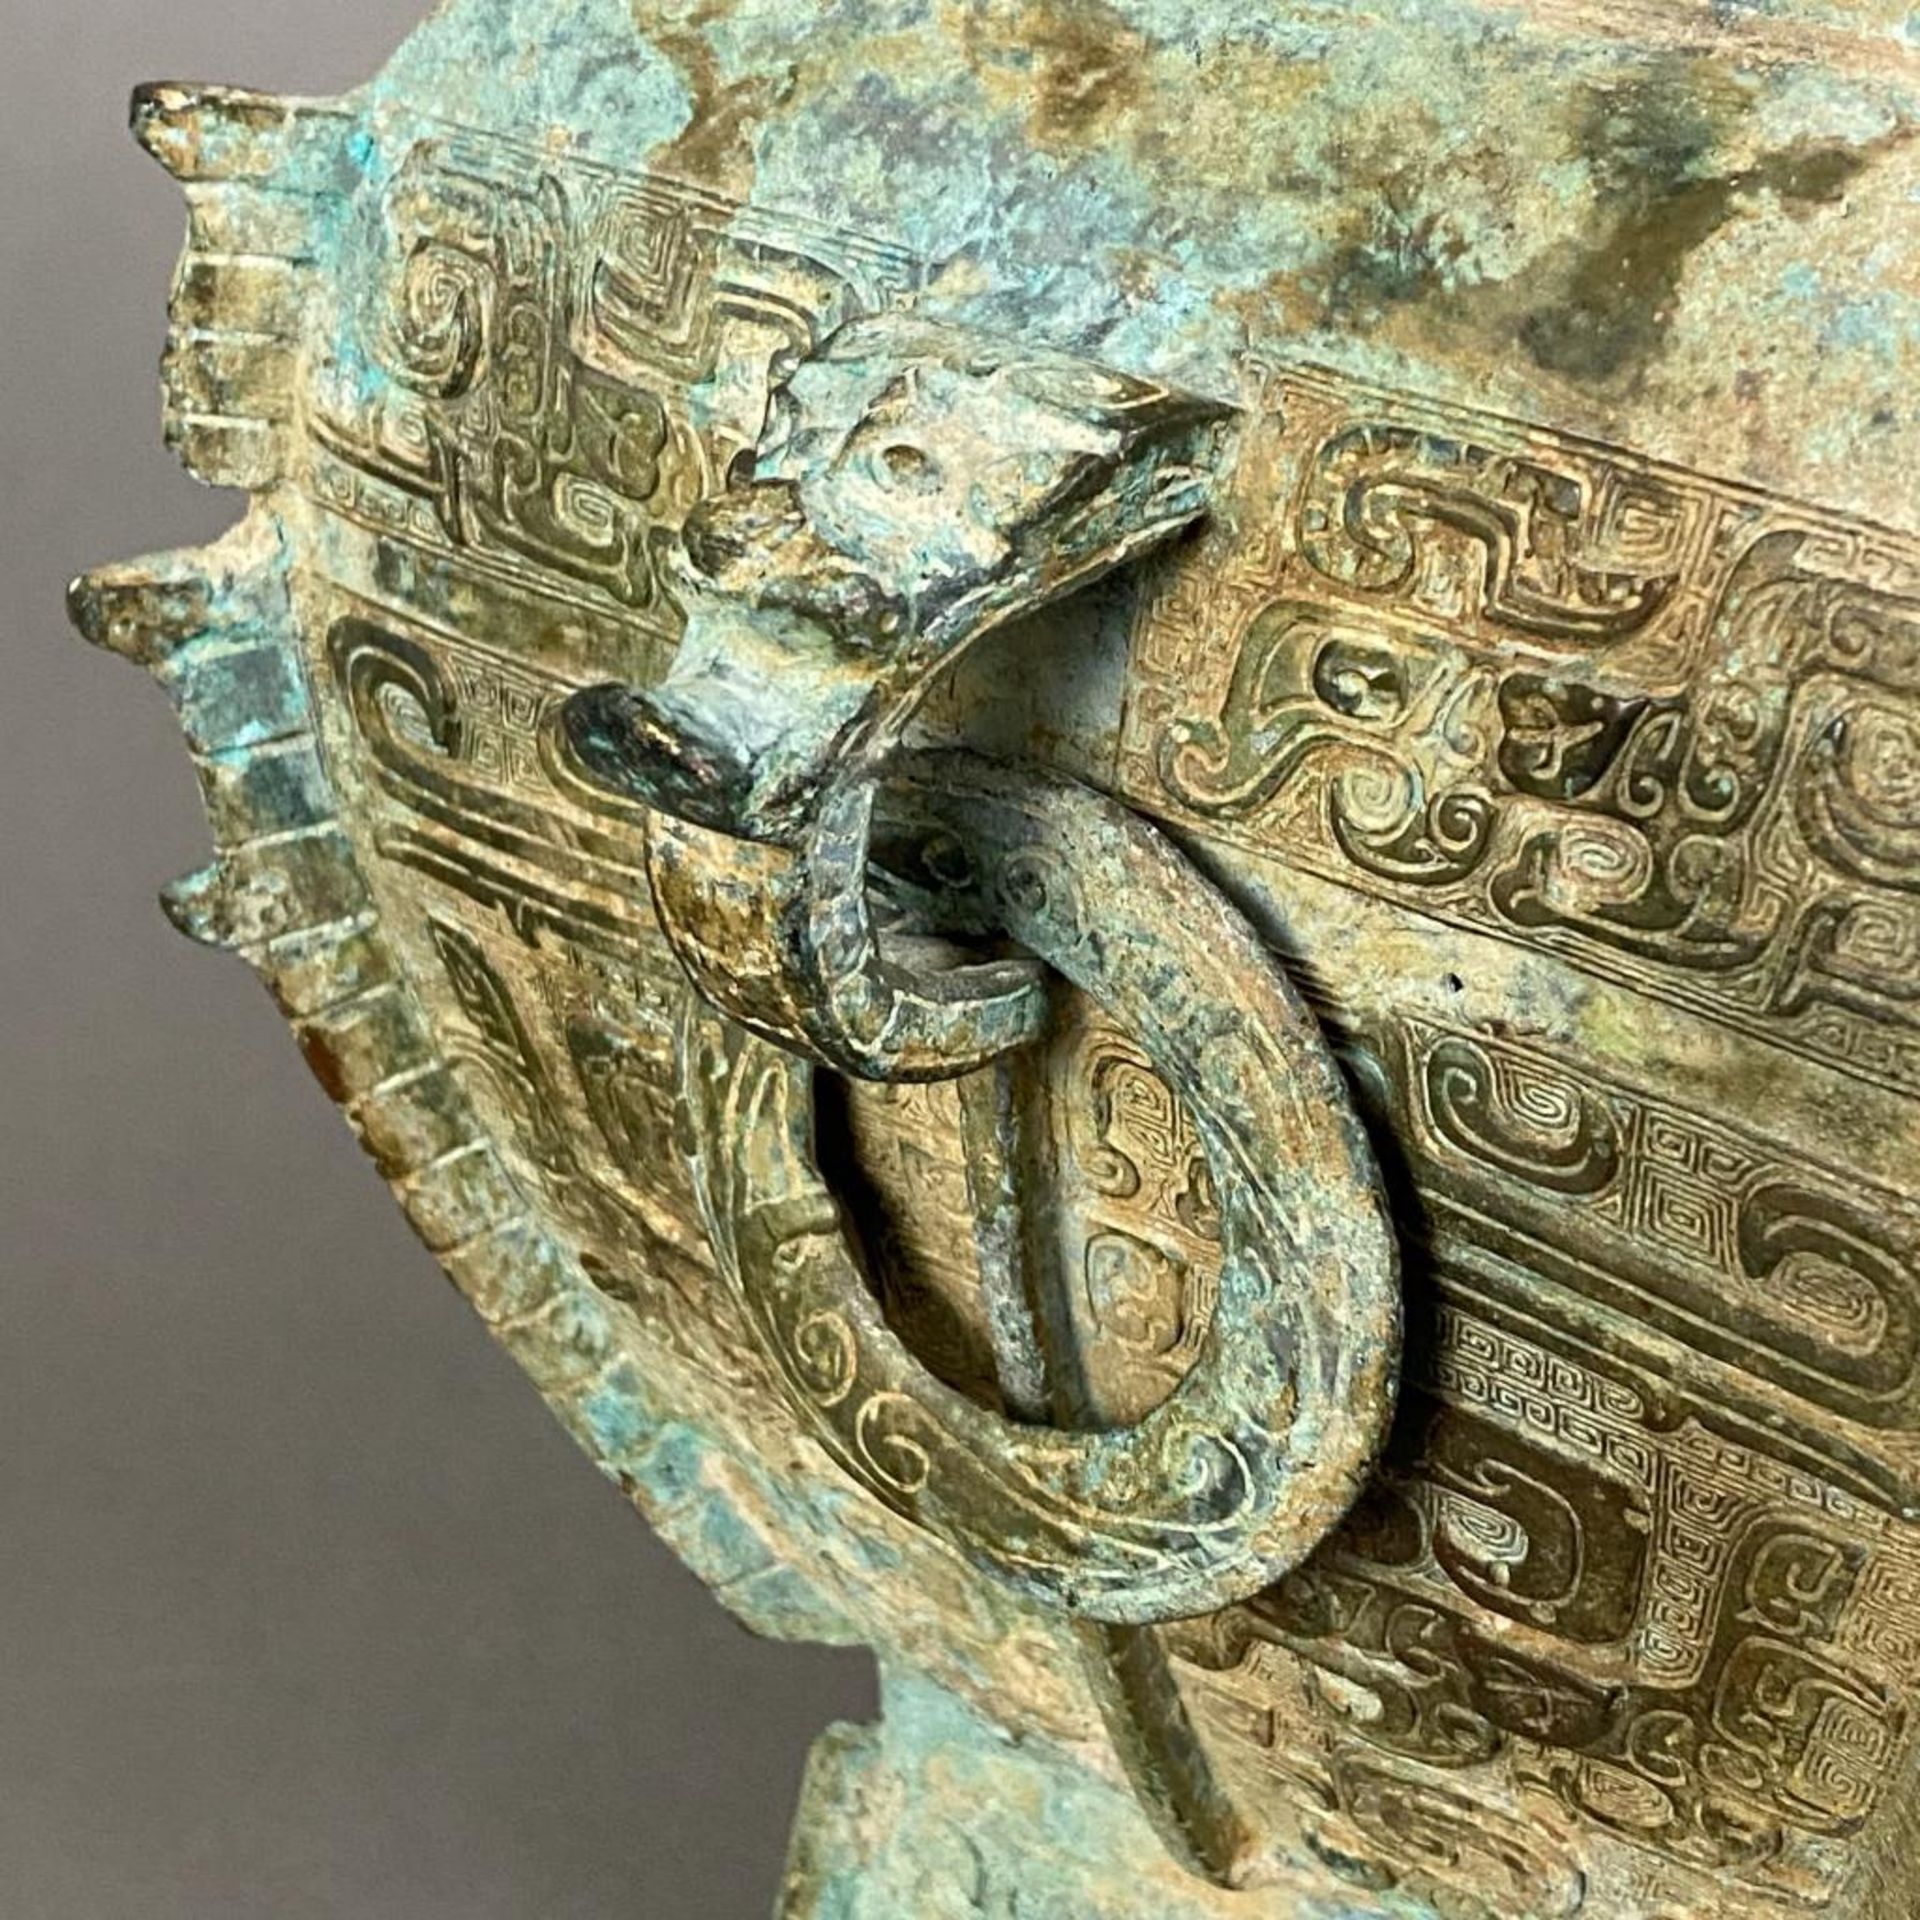 Fanghu-Vase im archaischen Stil - China, grün-braun patinierte Bronze, vierkantige gebauchte Form a - Image 5 of 10